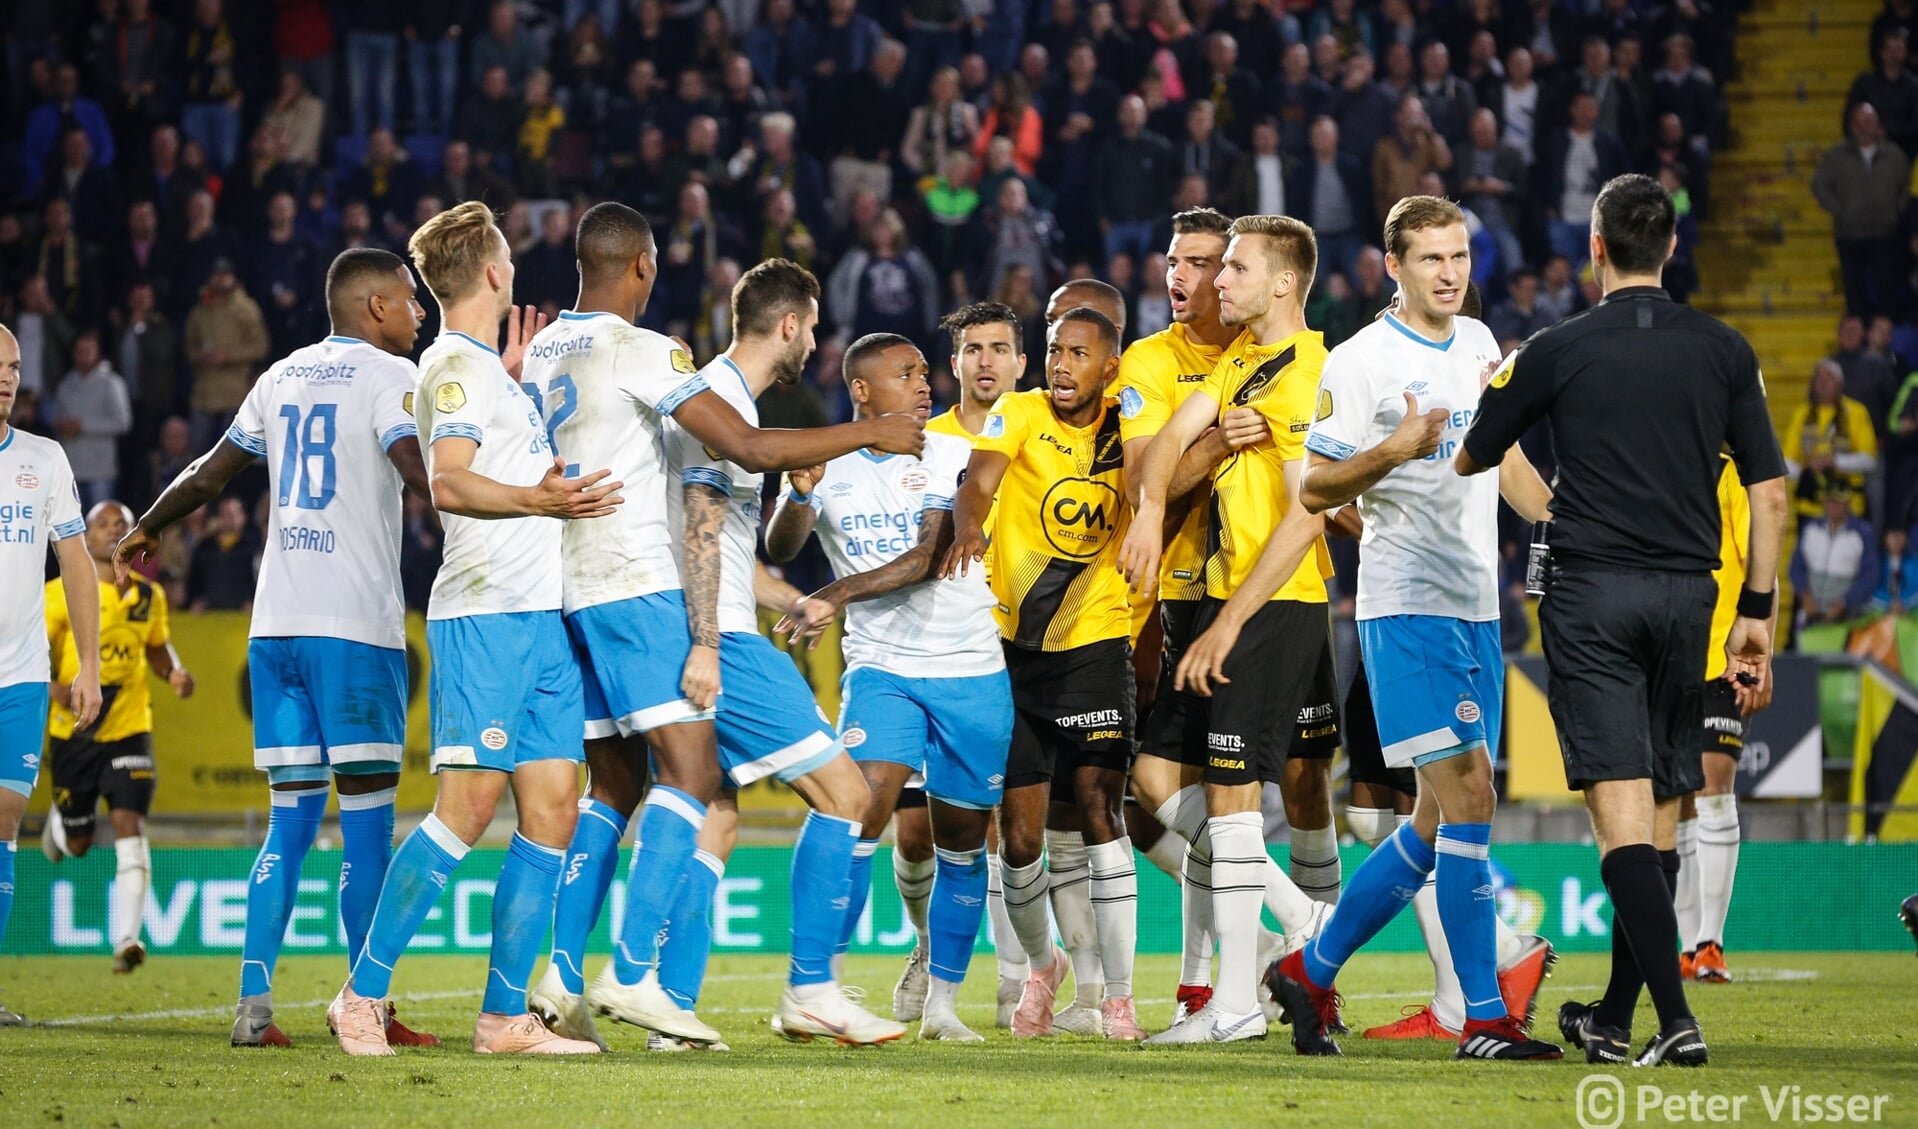 De laatste keer dat NAC en PSV elkaar troffen in Breda was voor de competitie in september 2018. PSV won toen met 0-2.